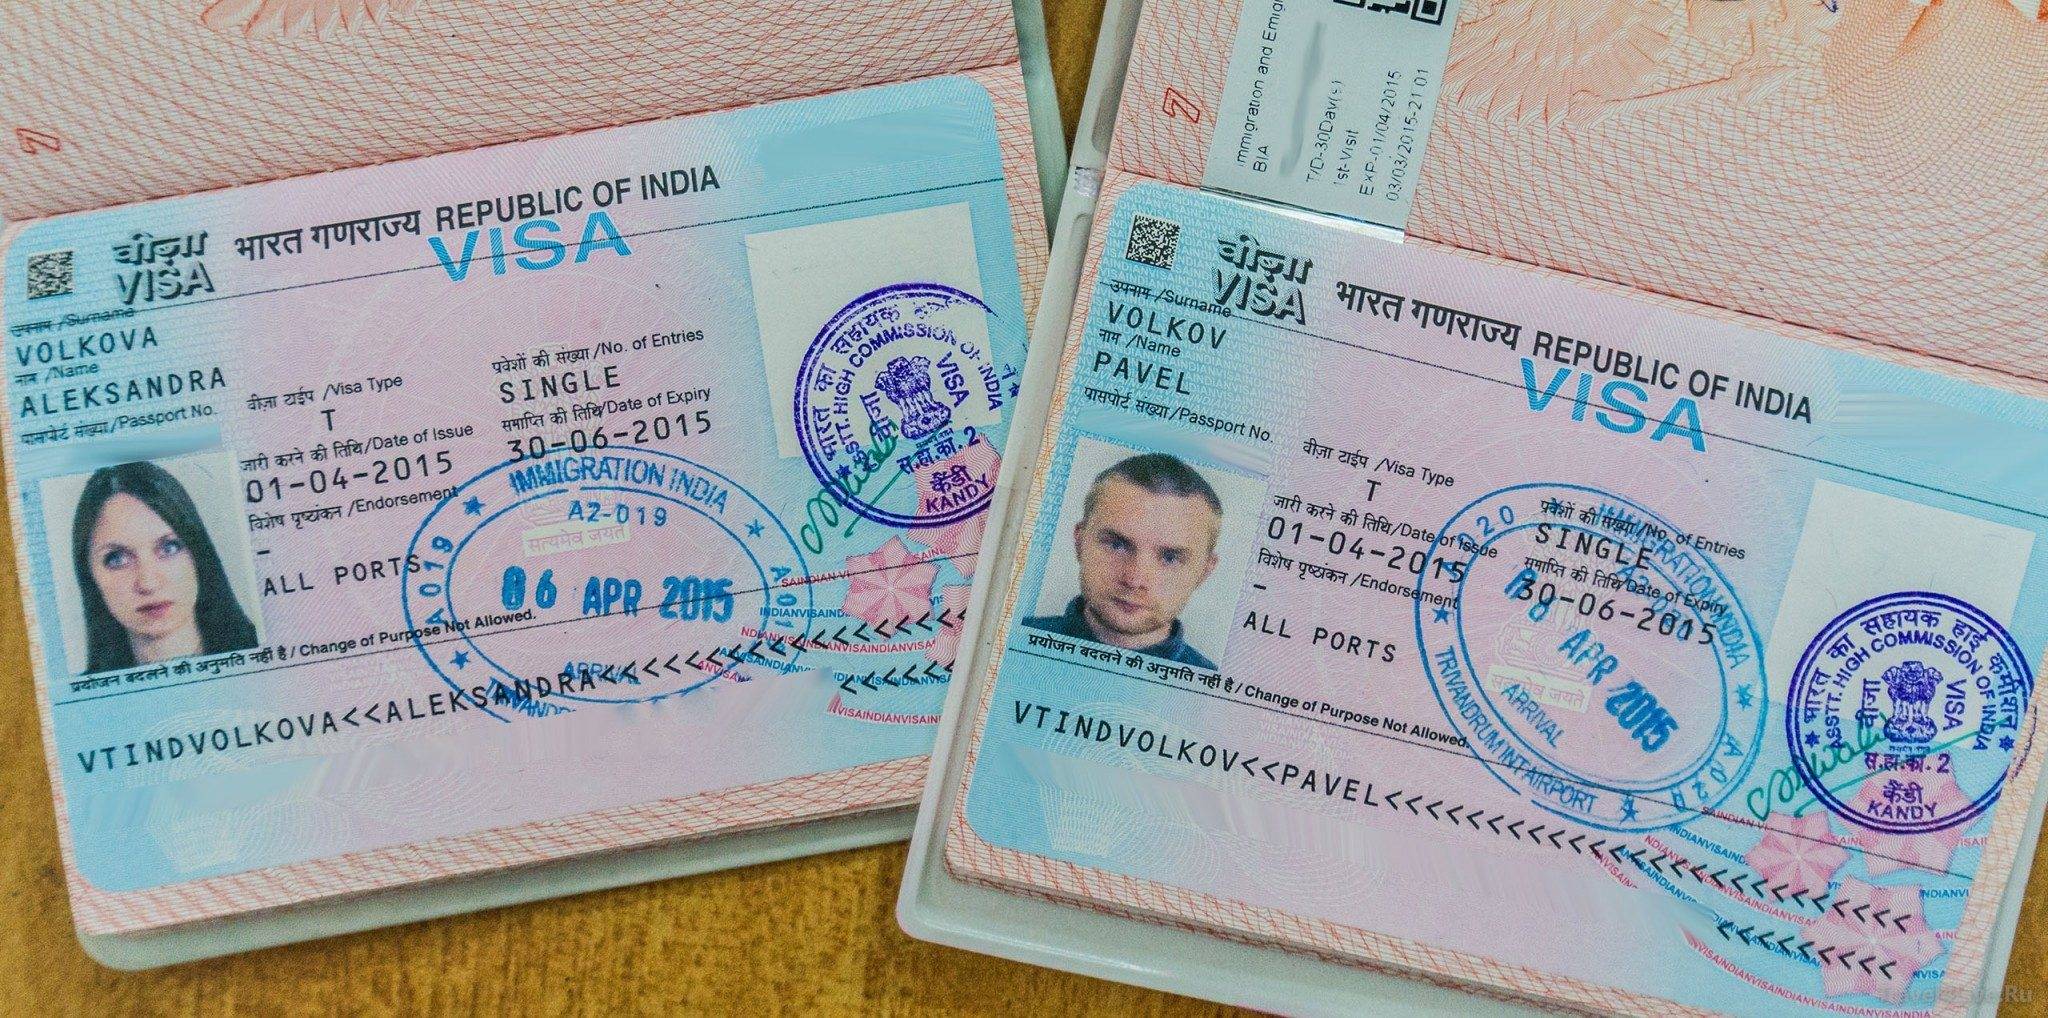 Камбоджа: визу можно получить в аэропорту, посольстве, через интернет